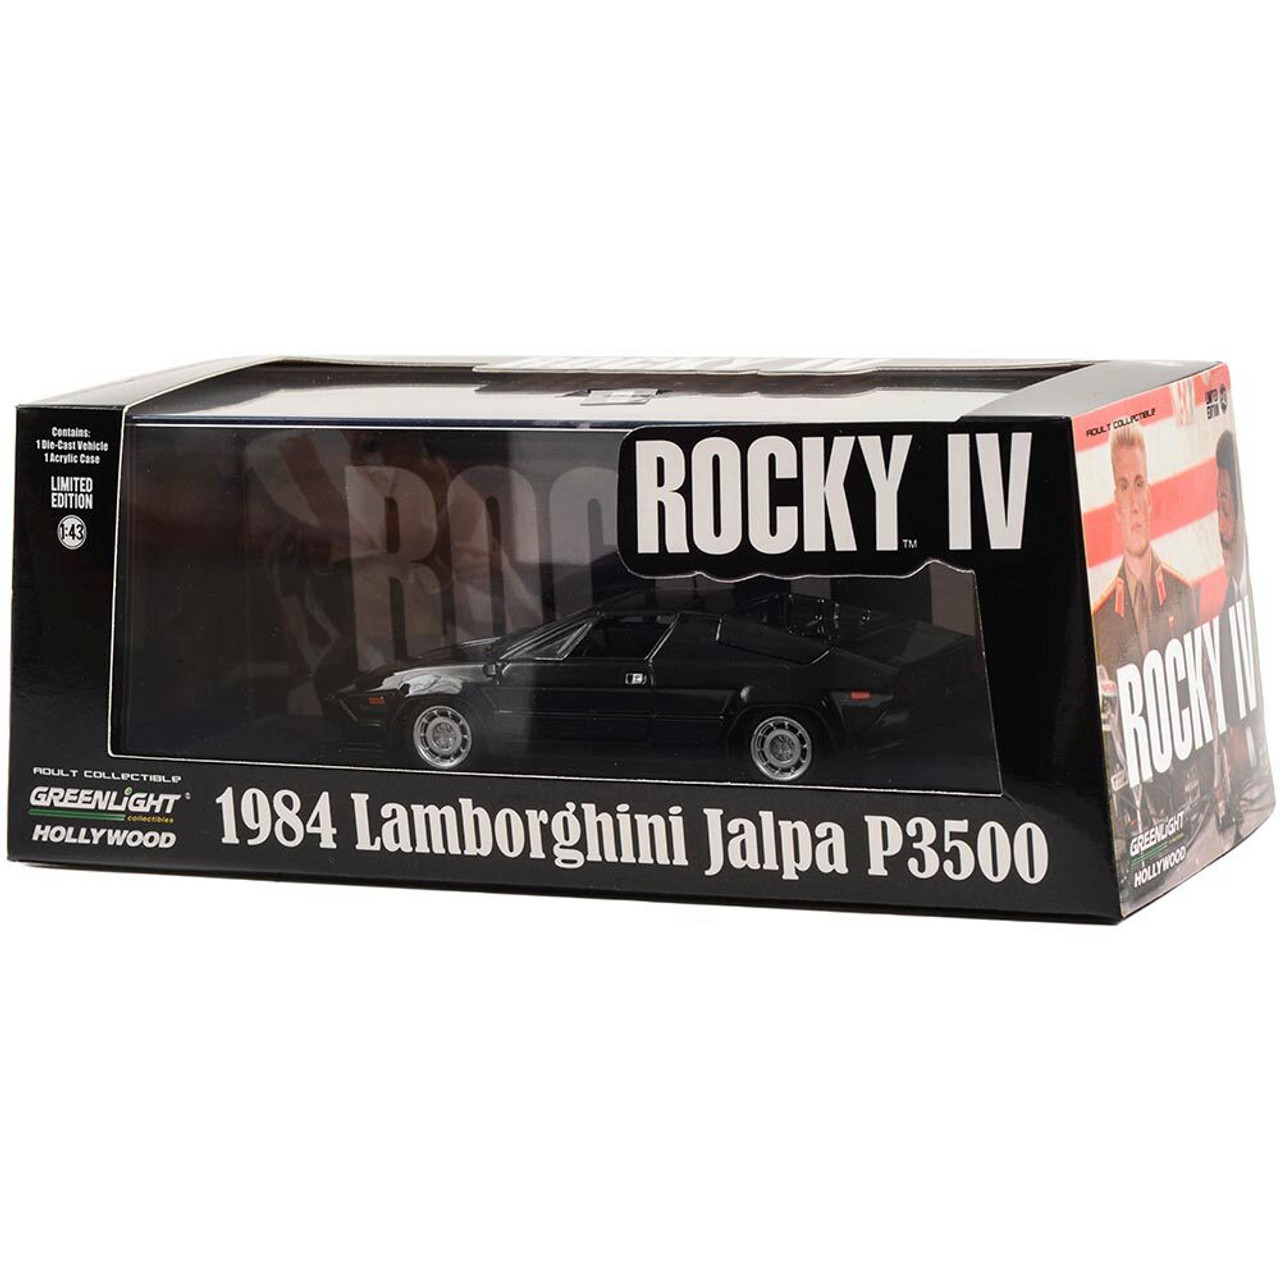 ROCKY IV 1984 LAMBORGHINI JALPA P3500